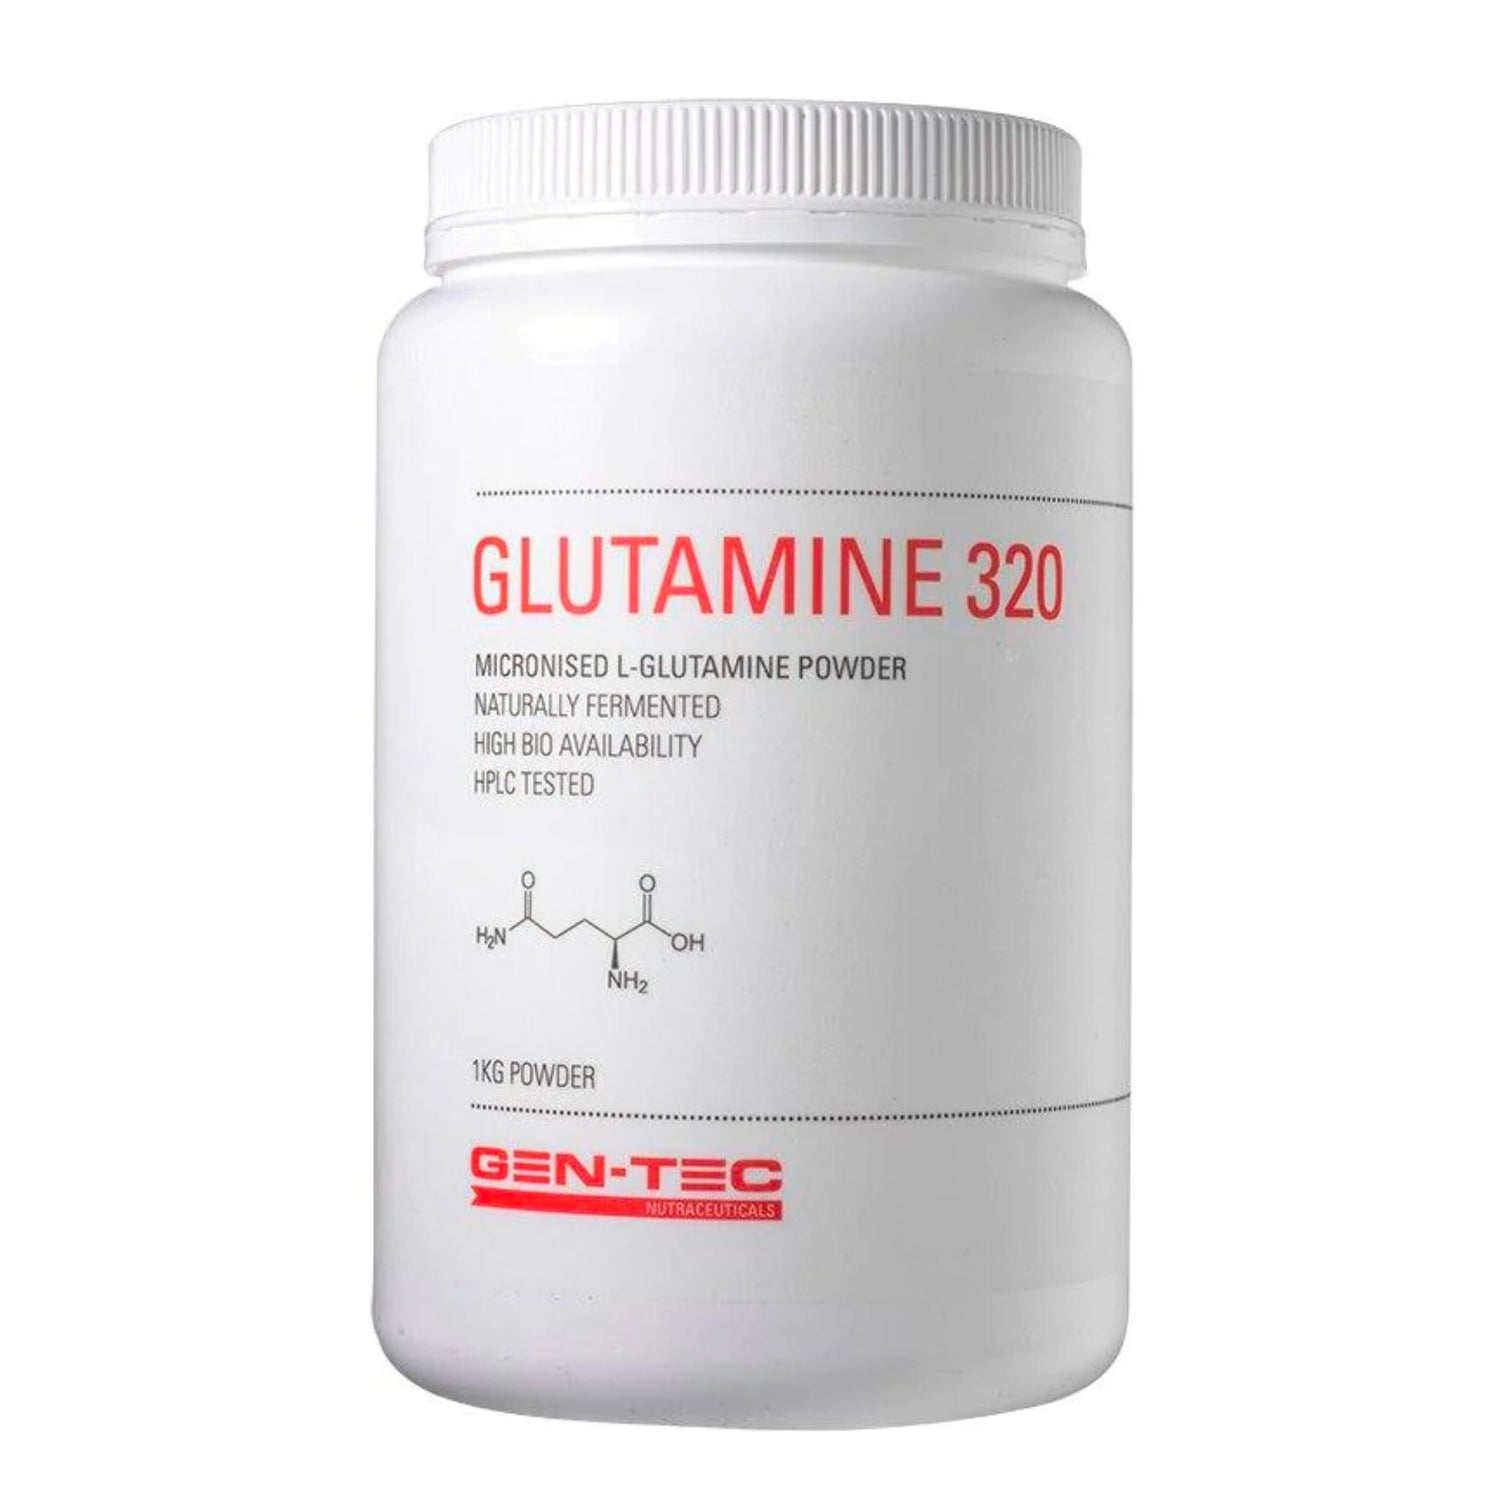 Gentec Glutamine